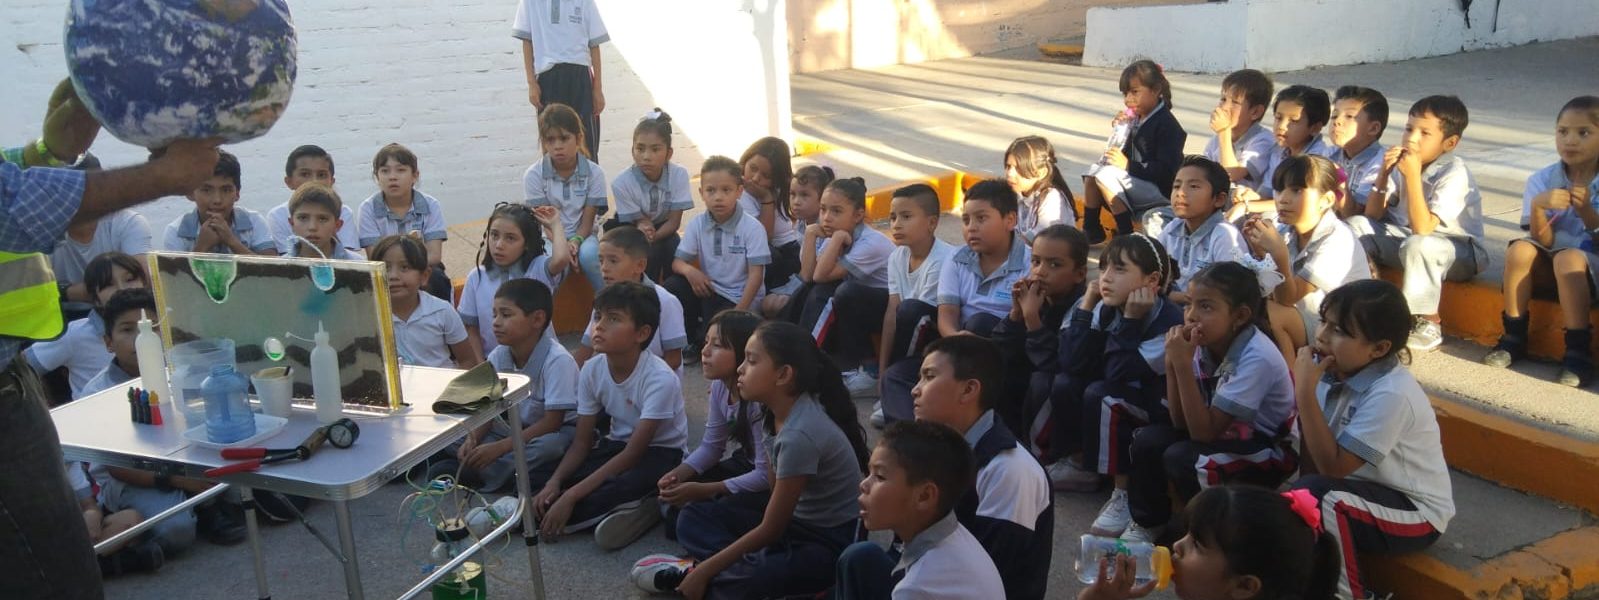 Veolia fomenta la cultura del agua con niñas y niños de Aguascalientes